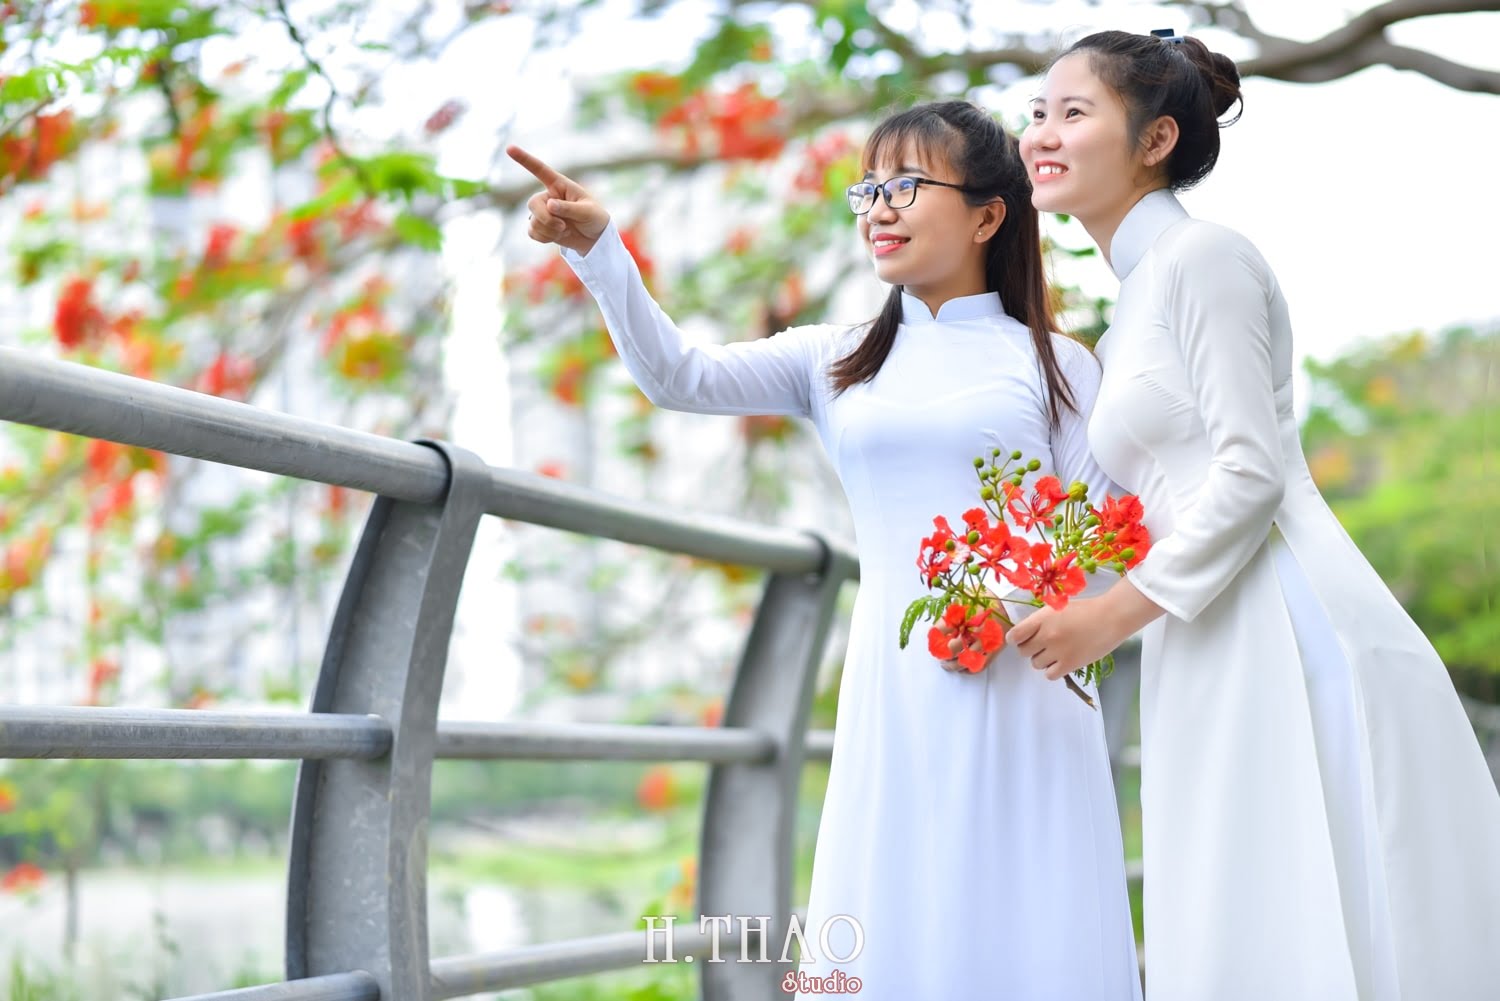 Anh ao dai hoa phuong 13 min - Ảnh chụp ngoại cảnh với hoa phượng cho khách hàng- HThao Studio